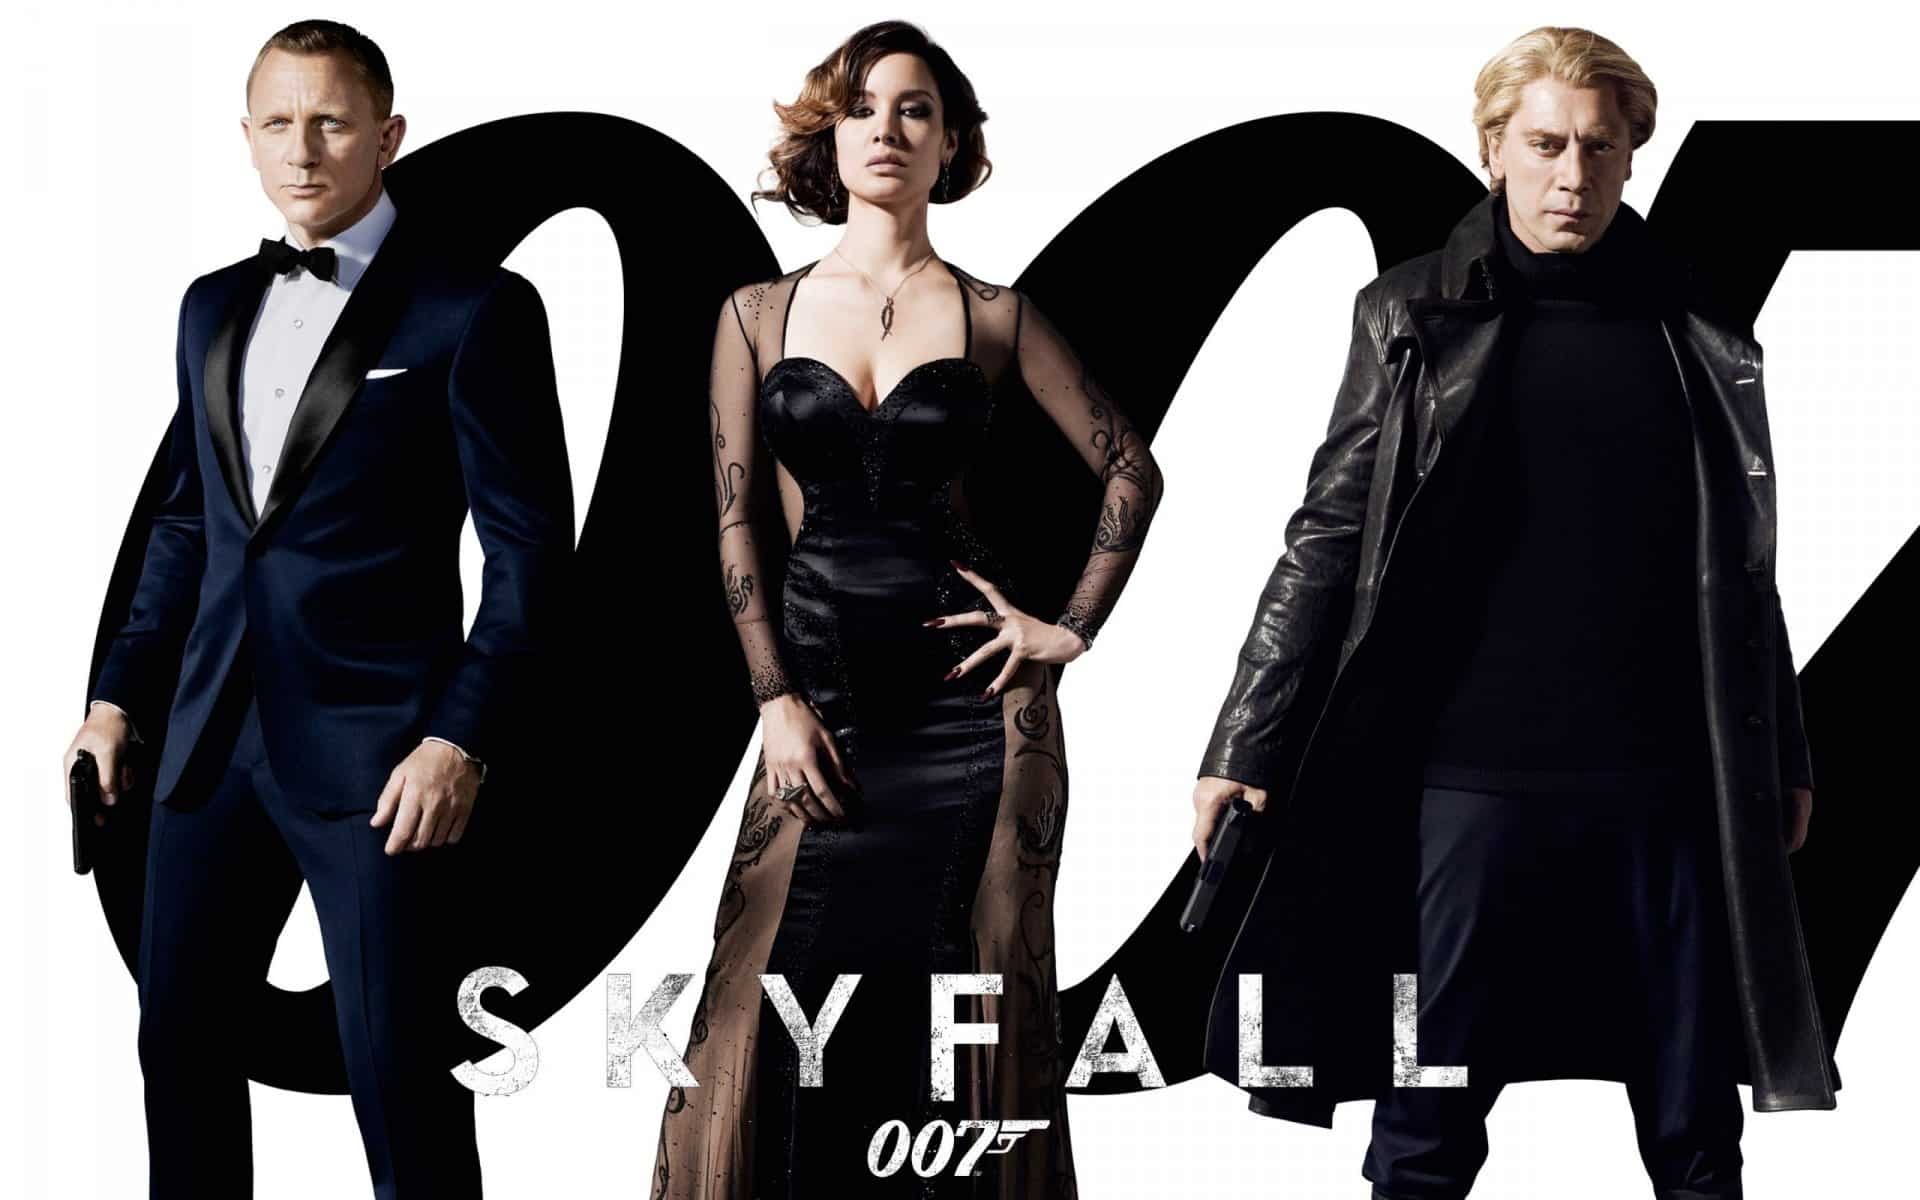 007 Legends DLC is Skyfall